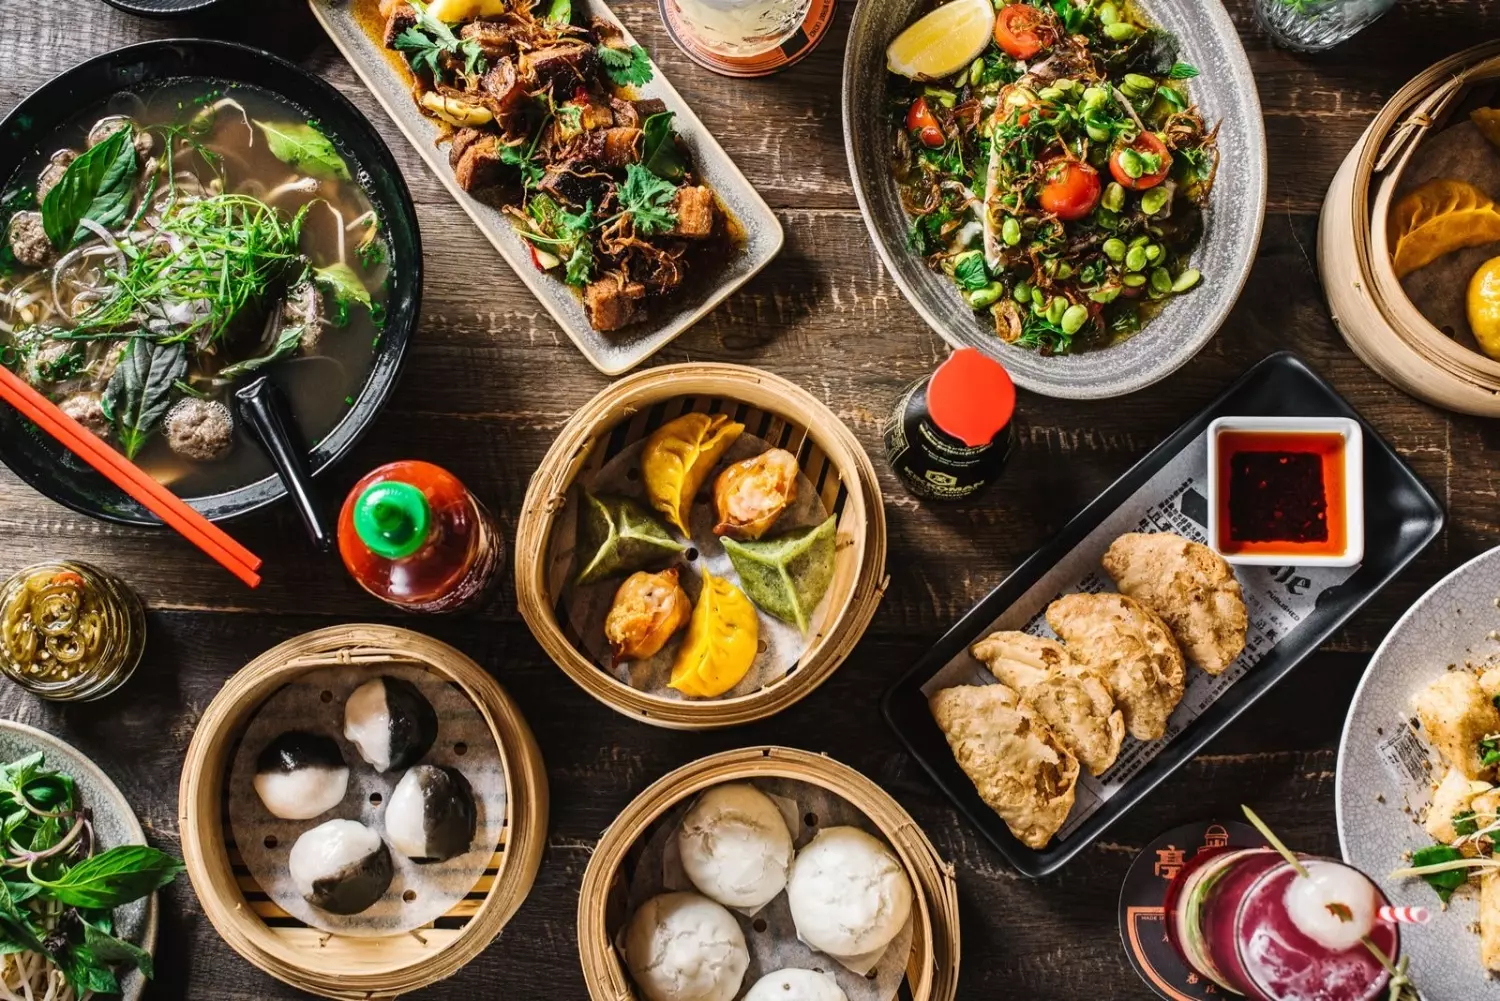 В китайских ресторанах можно купить абонемент на питание и кушать дешевле